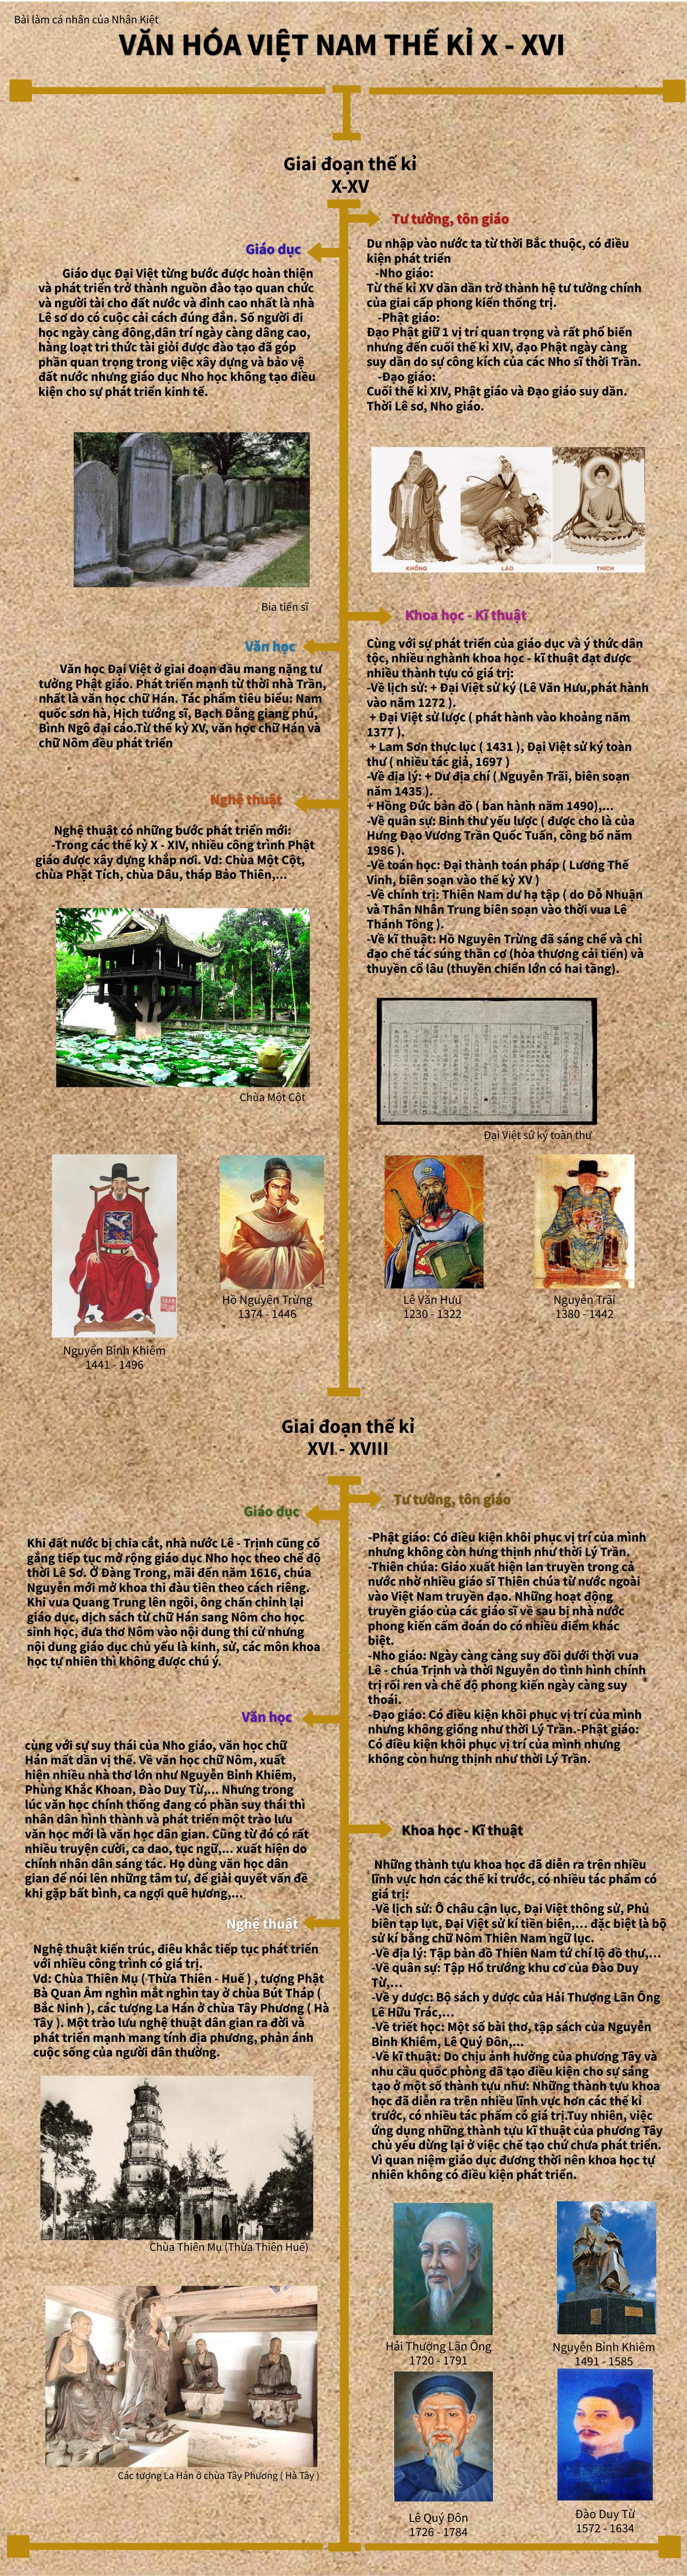 Văn hóa Việt Nam thế kỉ X - XVIII ( cá nhân: Nhân Kiệt )